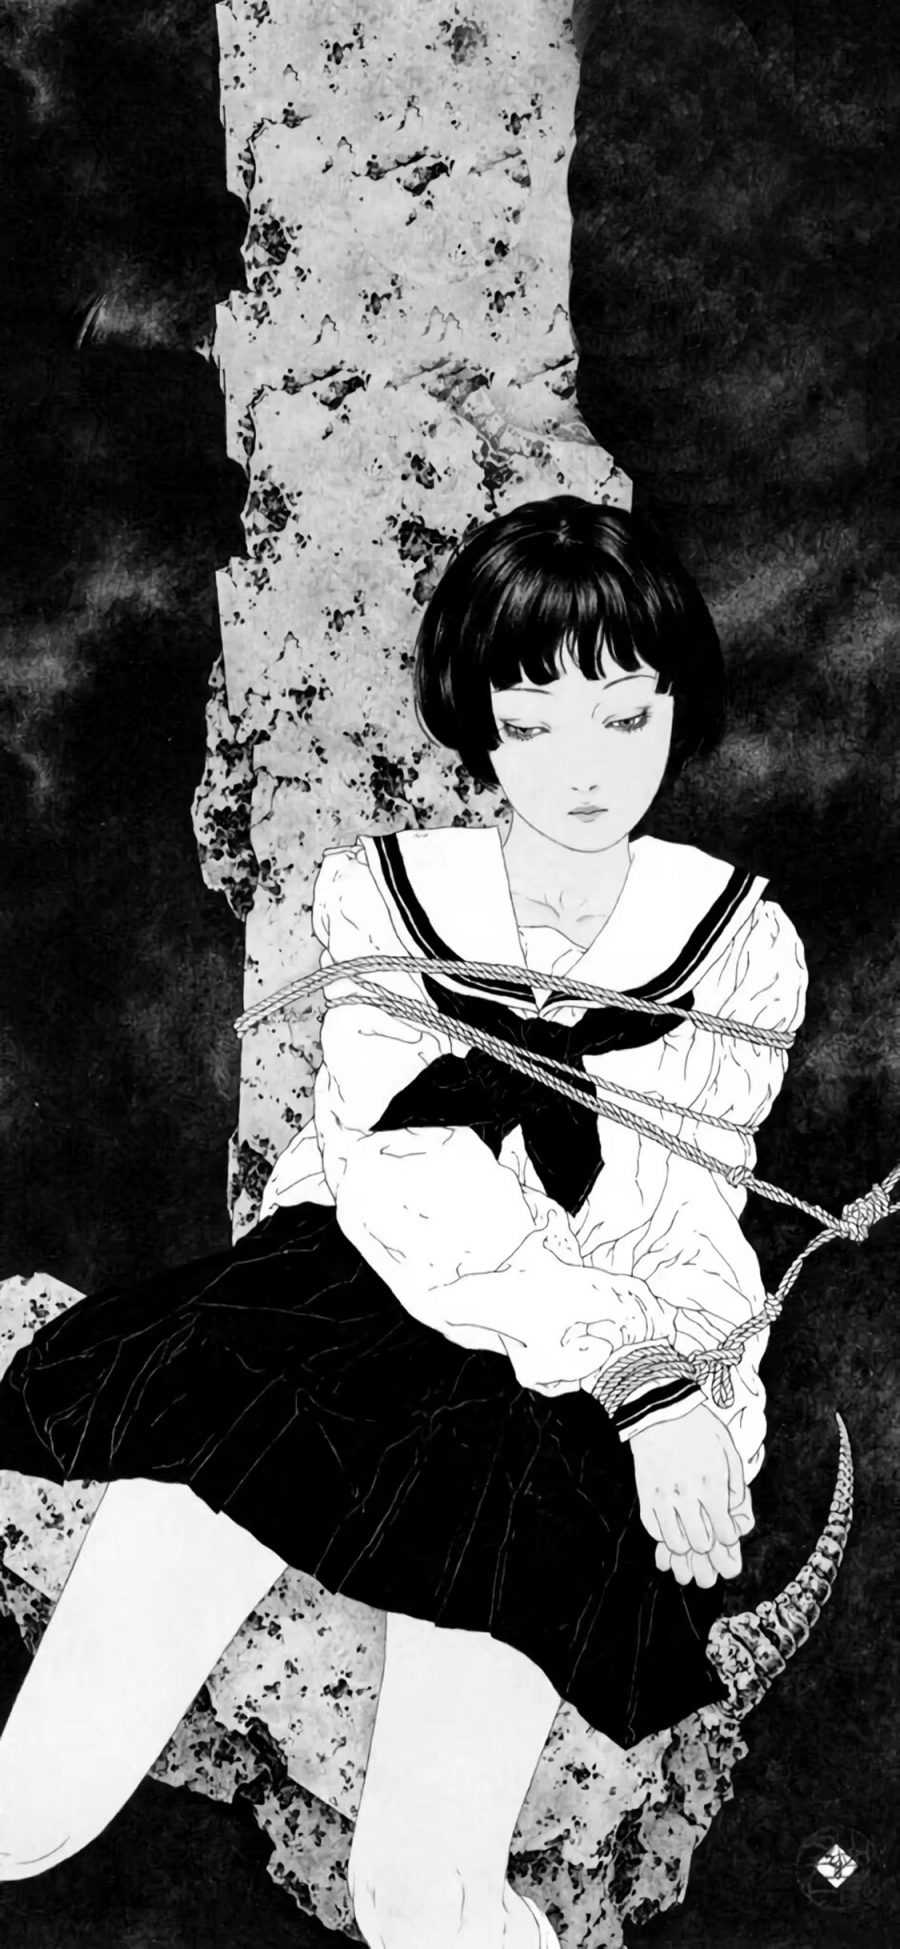 [2436×1125]日系 动漫少女 暗黑 水手服 苹果手机动漫壁纸图片